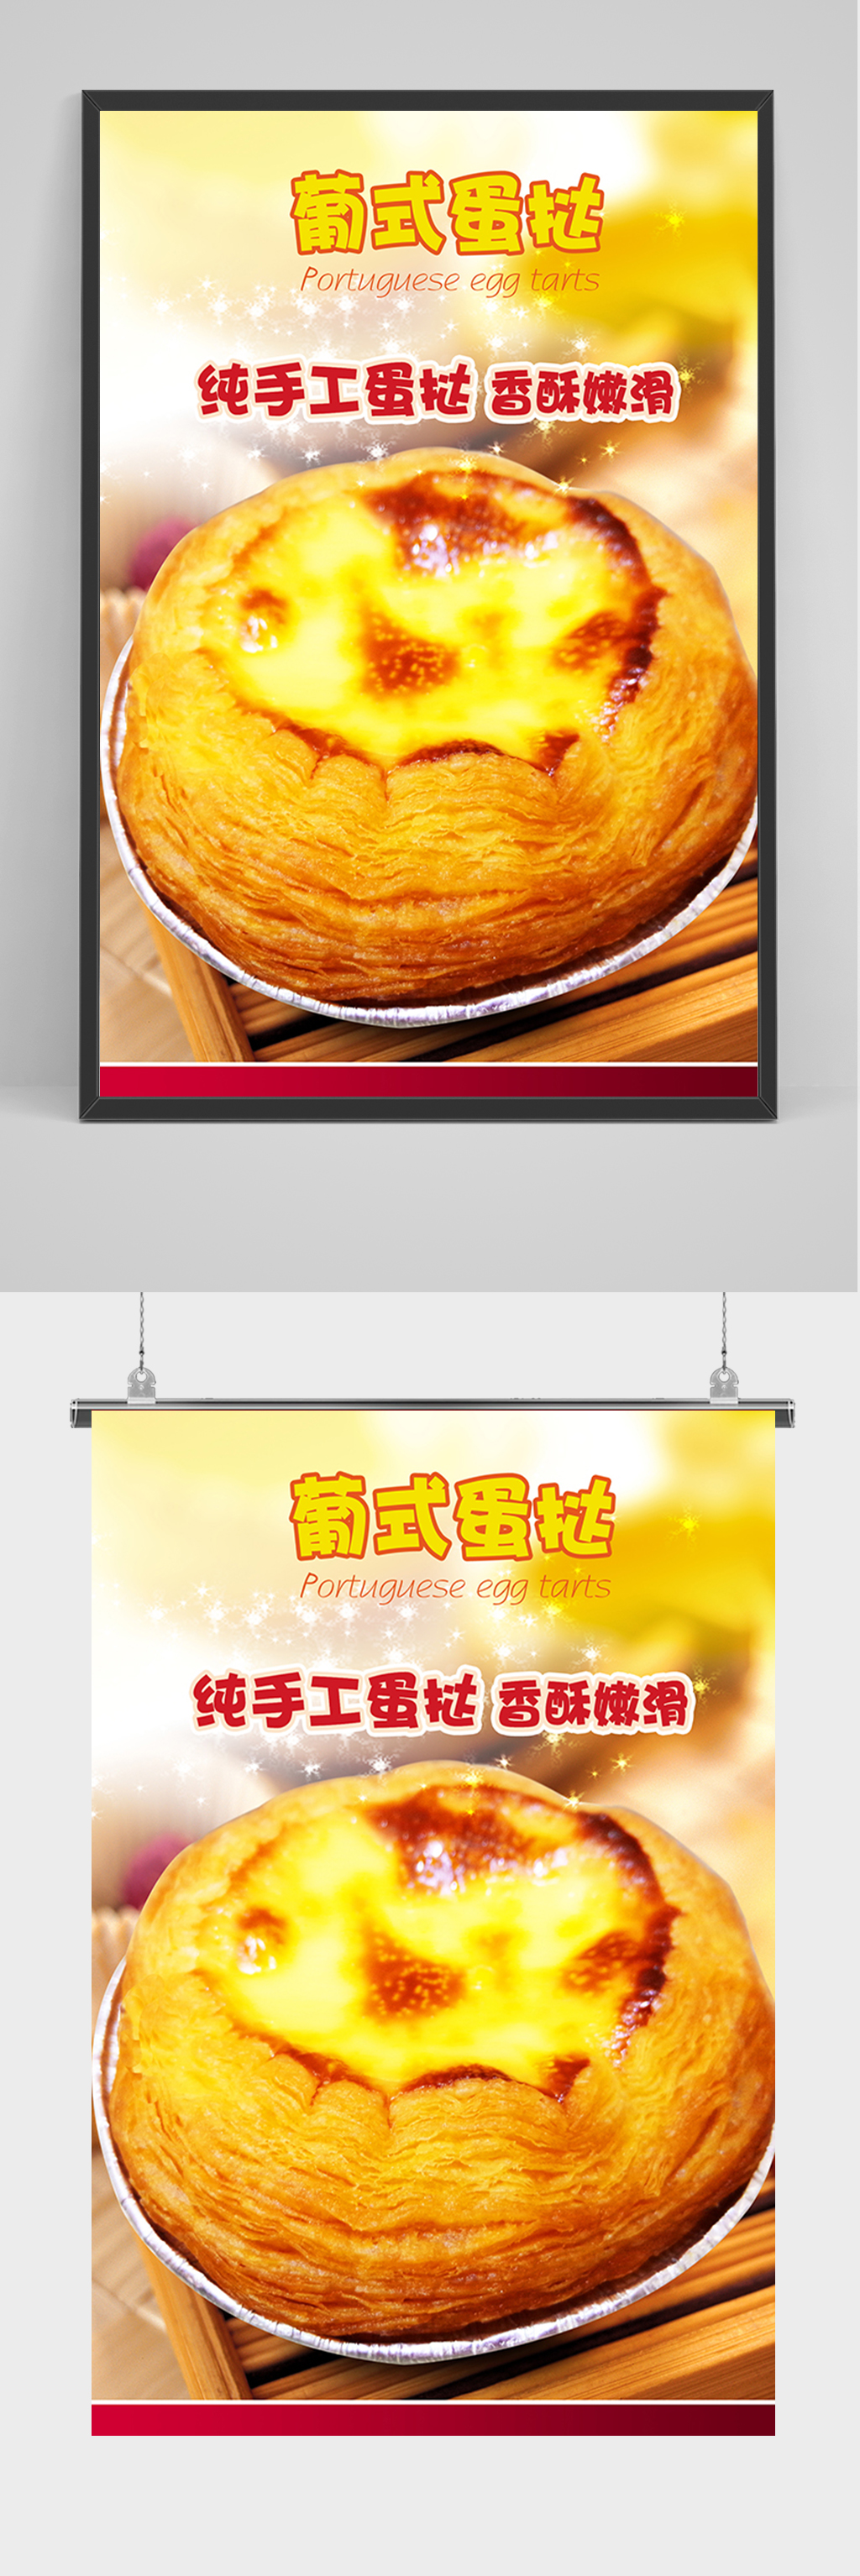 肯德基葡式蛋挞广告图片